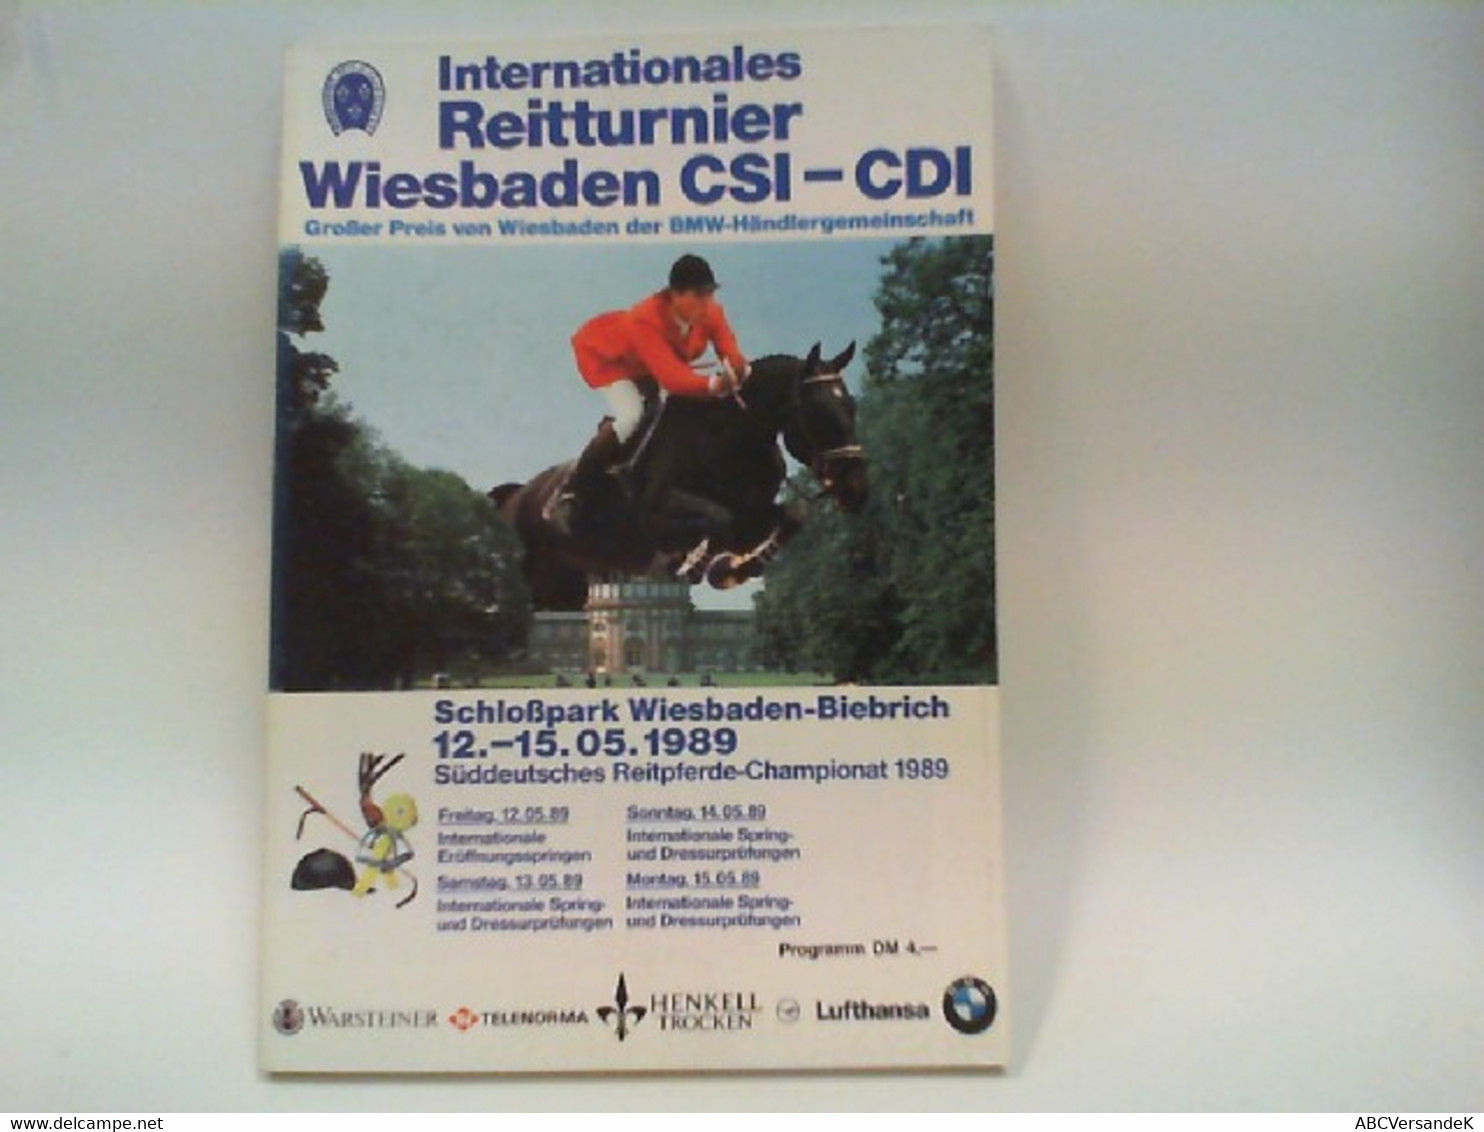 Internationales Reitturnier Wiesbaden 12.-15.05.1989 - Sports